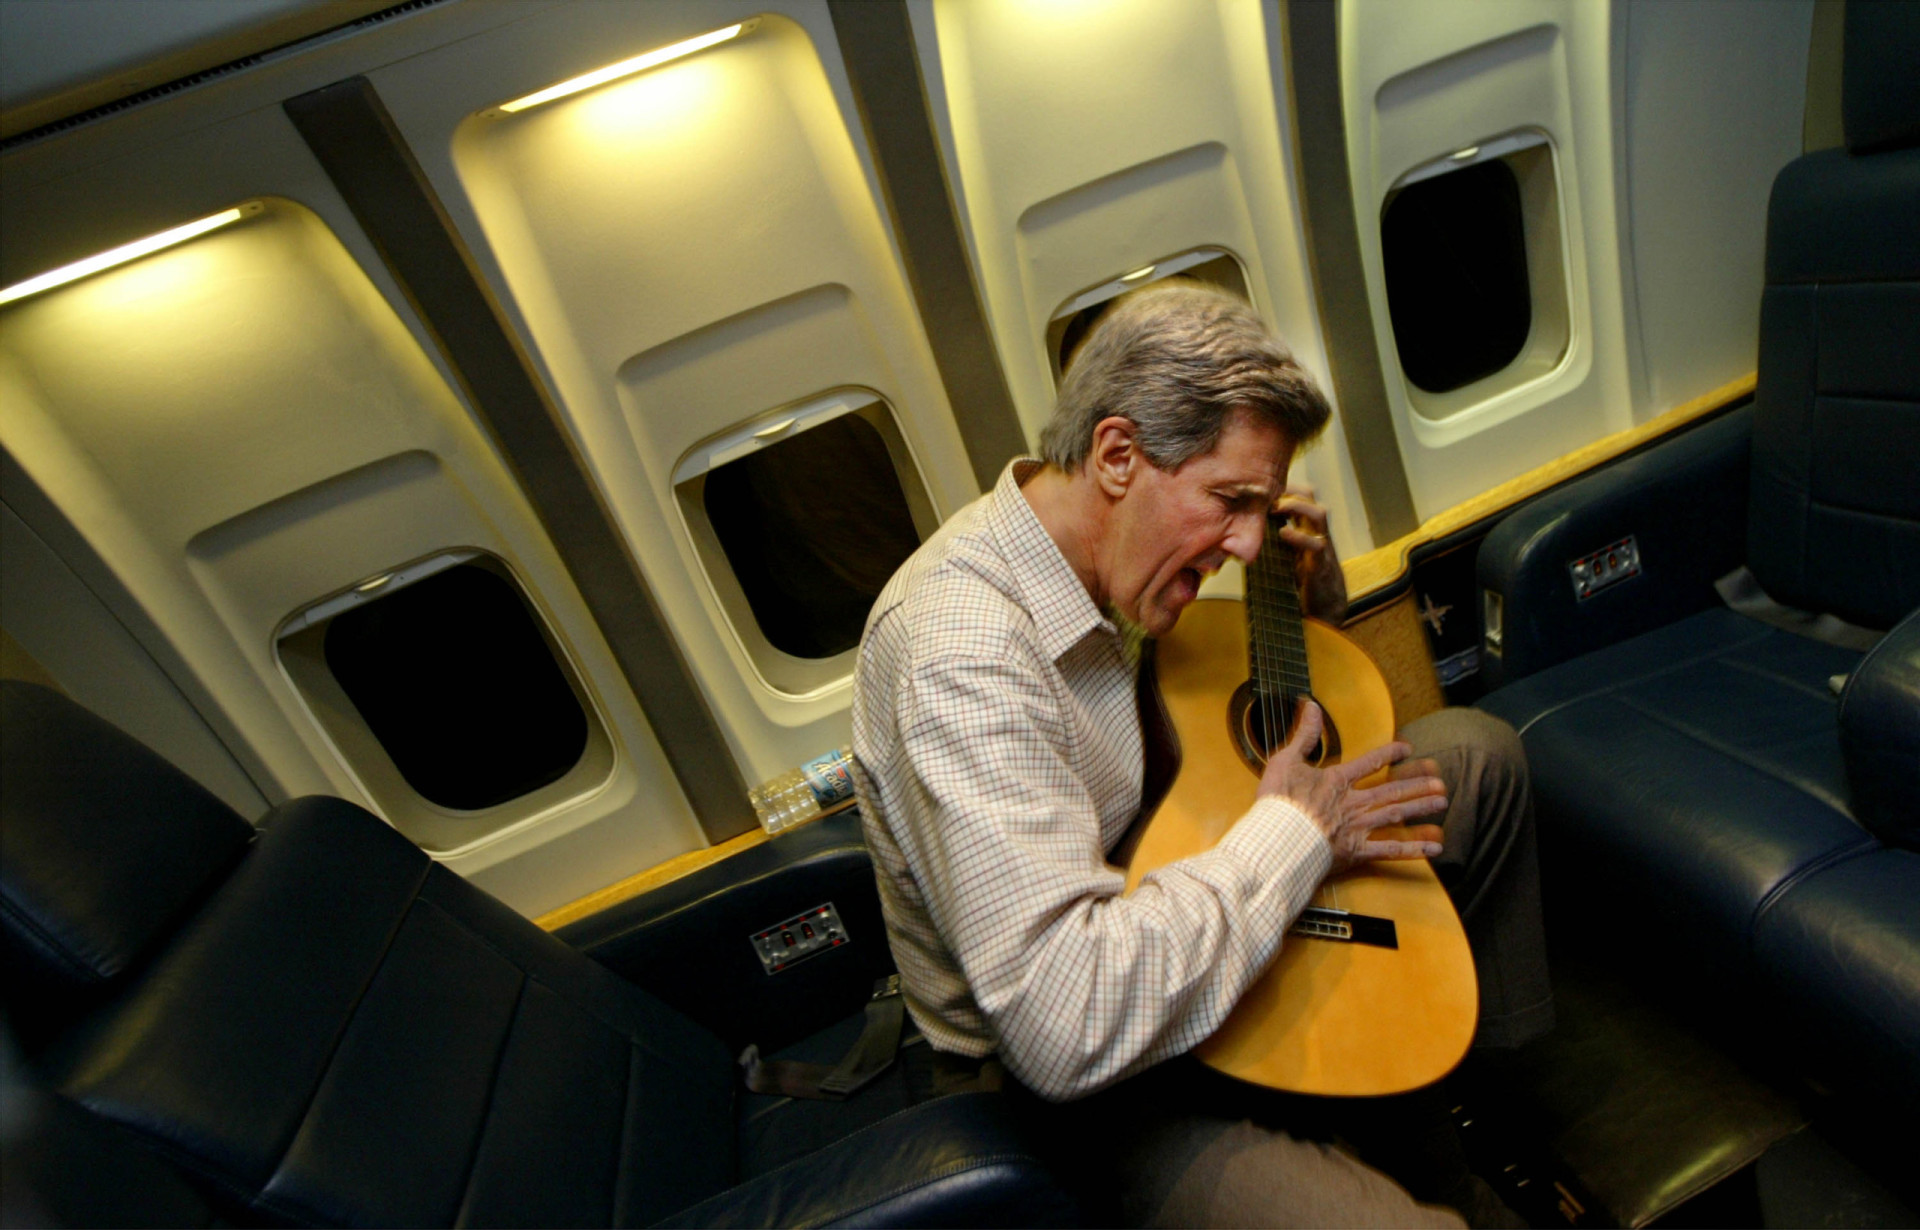 <p>Senator John Kerry, ein weiterer musikalischer Präsidentschaftskandidat, spielt am 18. Februar 2004 auf einem Flug nach Washington DC auf seiner Gitarre.</p><p>Sie können auch mögen:<a href="https://de.starsinsider.com/n/459254?utm_source=msn.com&utm_medium=display&utm_campaign=referral_description&utm_content=689702"> Die heißesten Babynews des Jahres 2021</a></p>